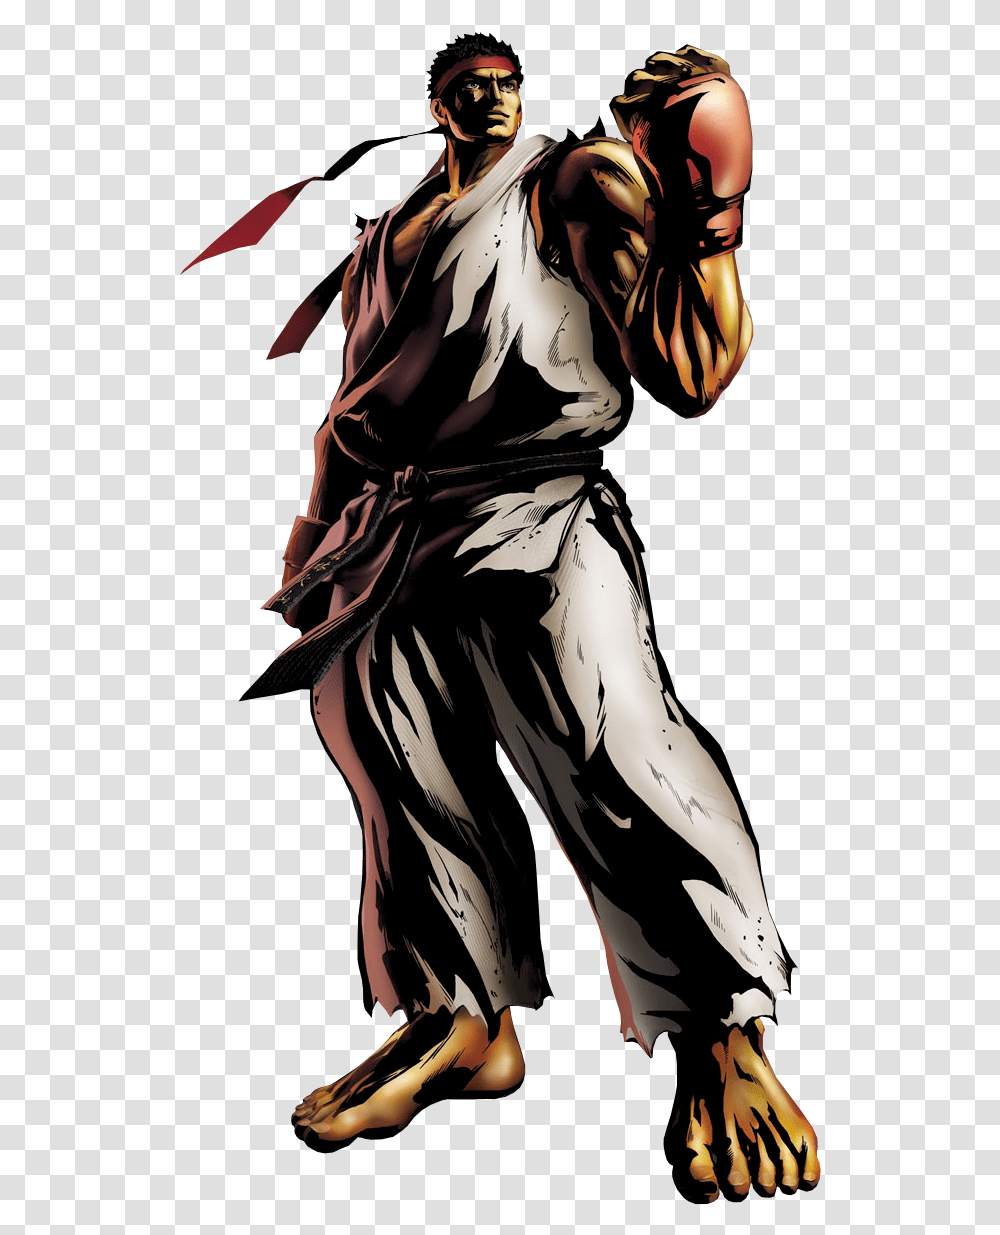 Ryu Image Marvel Vs Capcom 3 Character Art, Manga, Comics, Book, Person Transparent Png